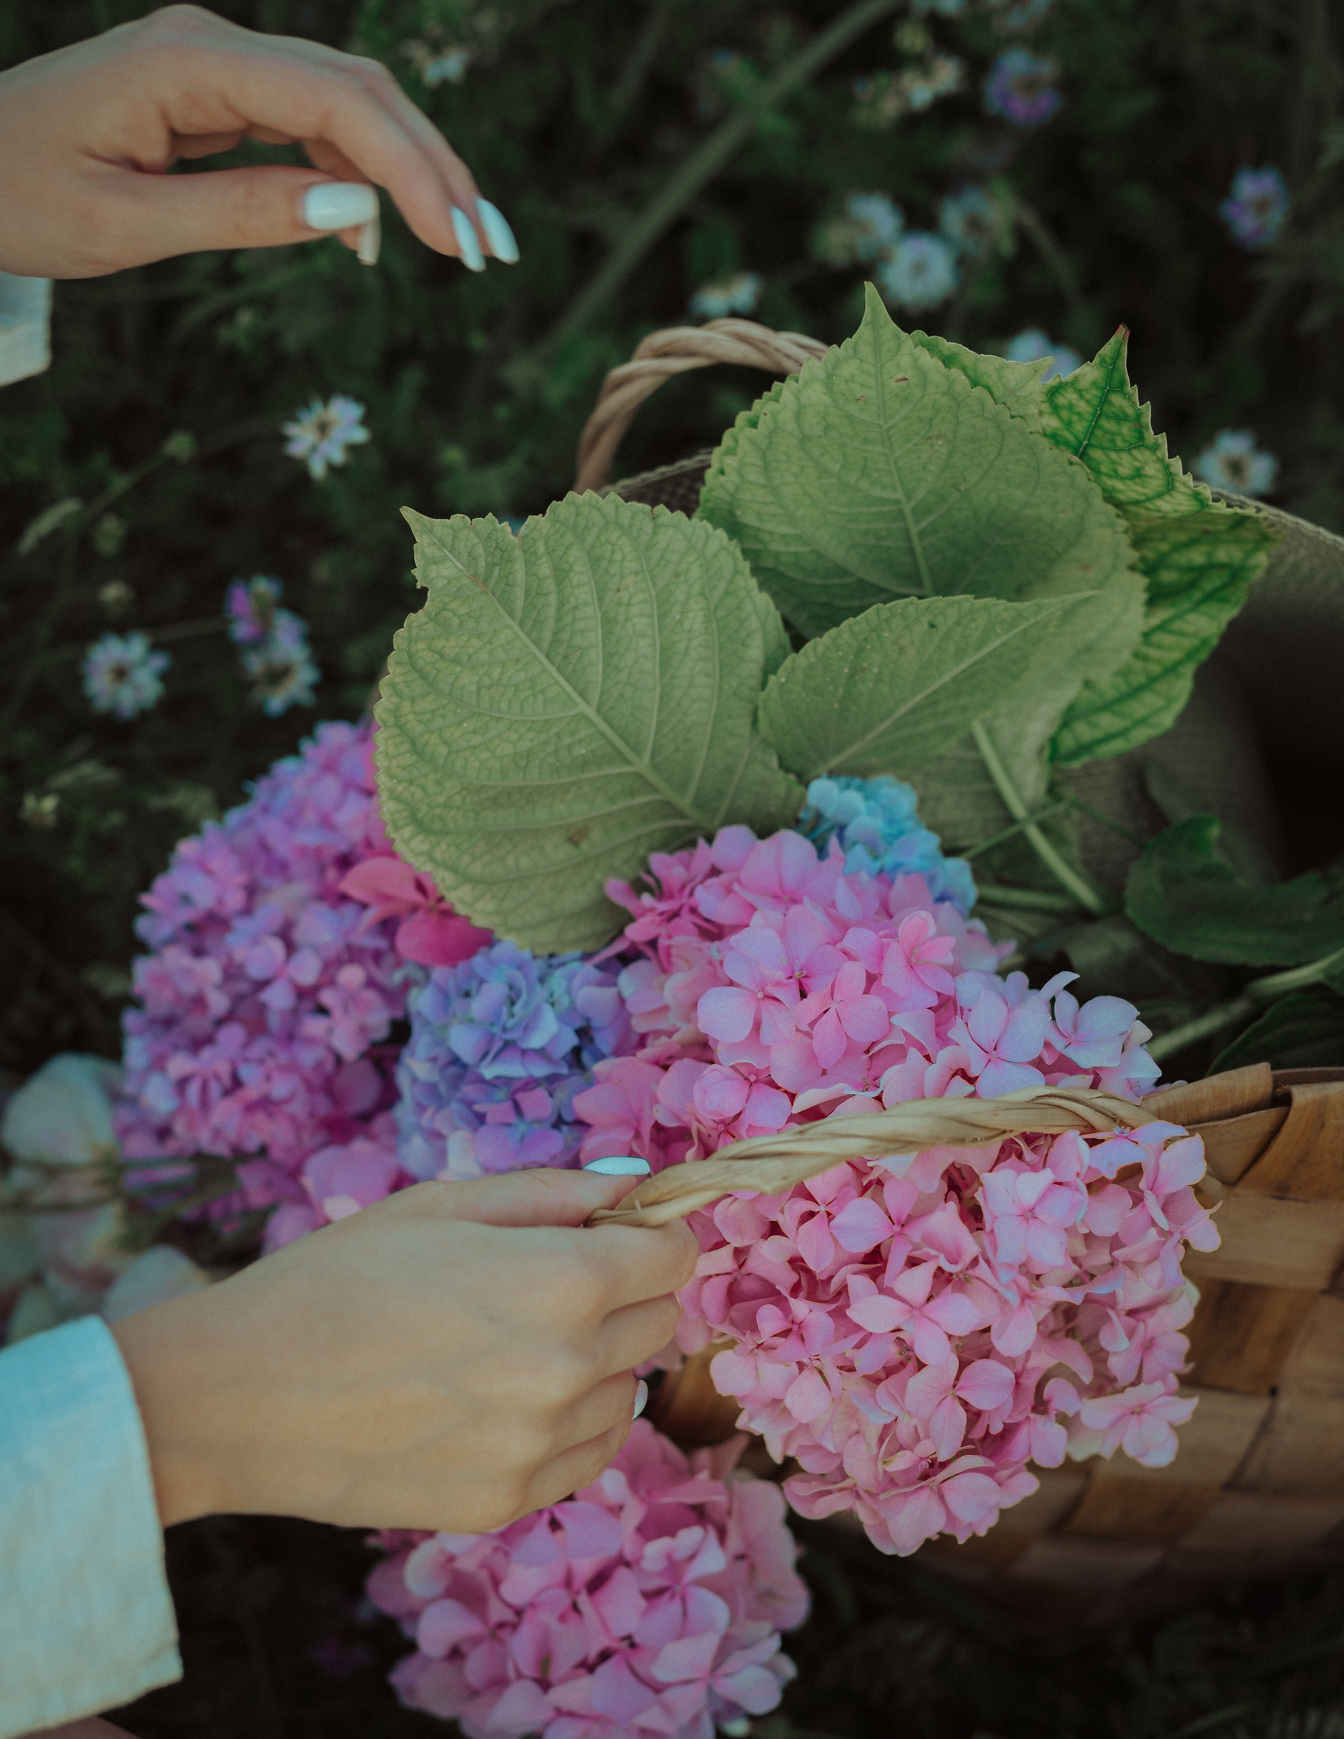 Wiklinowy kosz w ręku z różowawymi i niebieskimi kwiatami hortensji